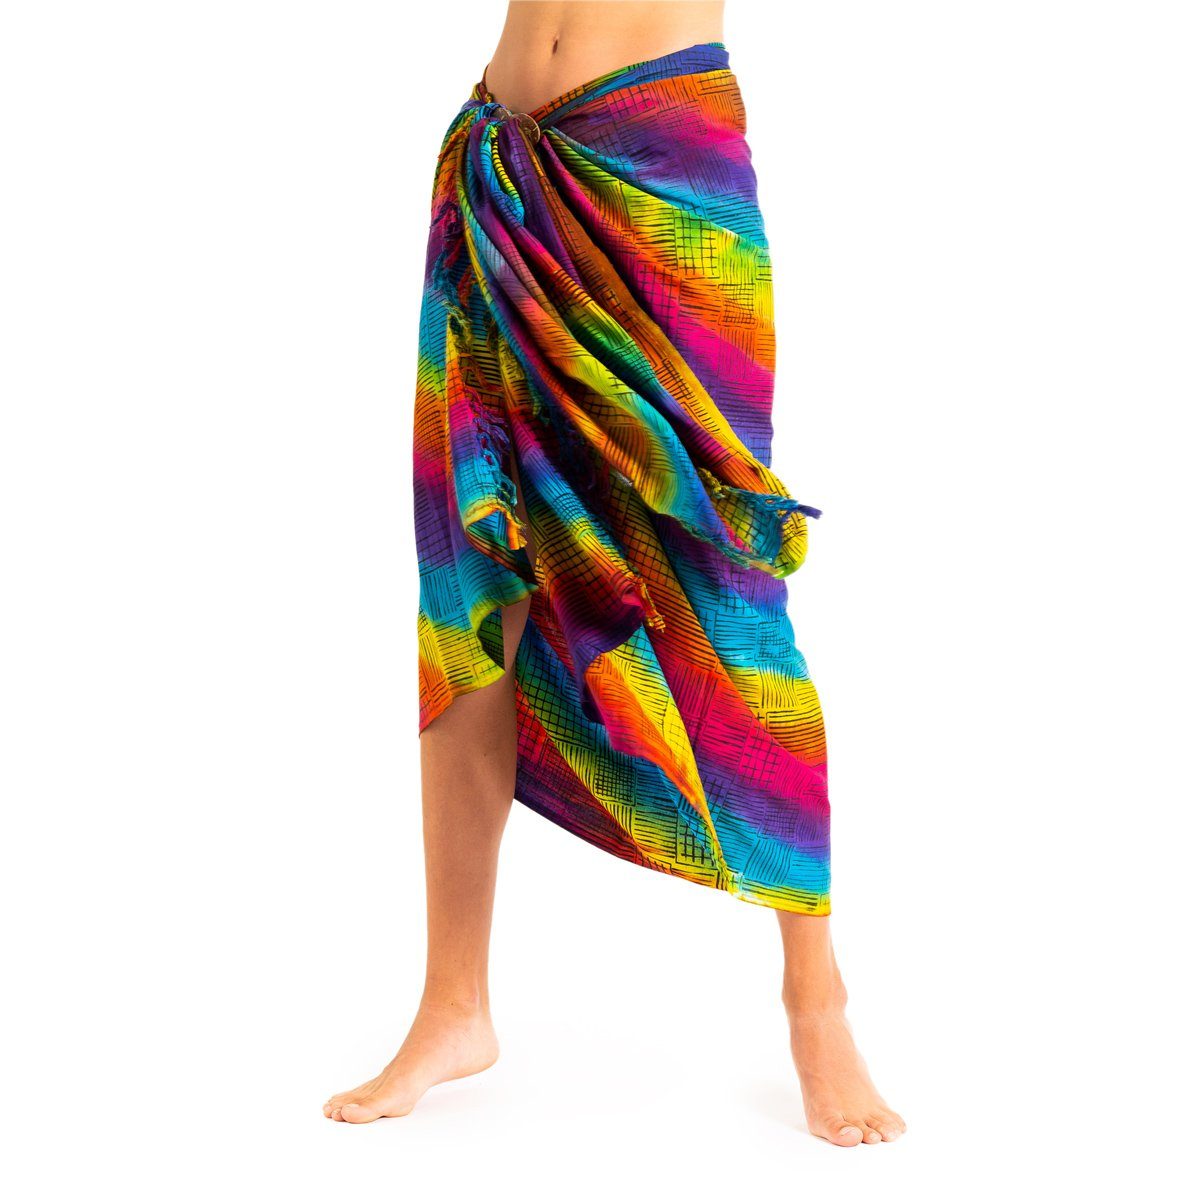 PANASIAM Pareo Sarong Wachsbatik Bunttöne aus hochwertiger Viskose Strandtuch, Strandkleid Bikini Cover-up Tuch für den Strand Schultertuch Halstuch B702 rainbow